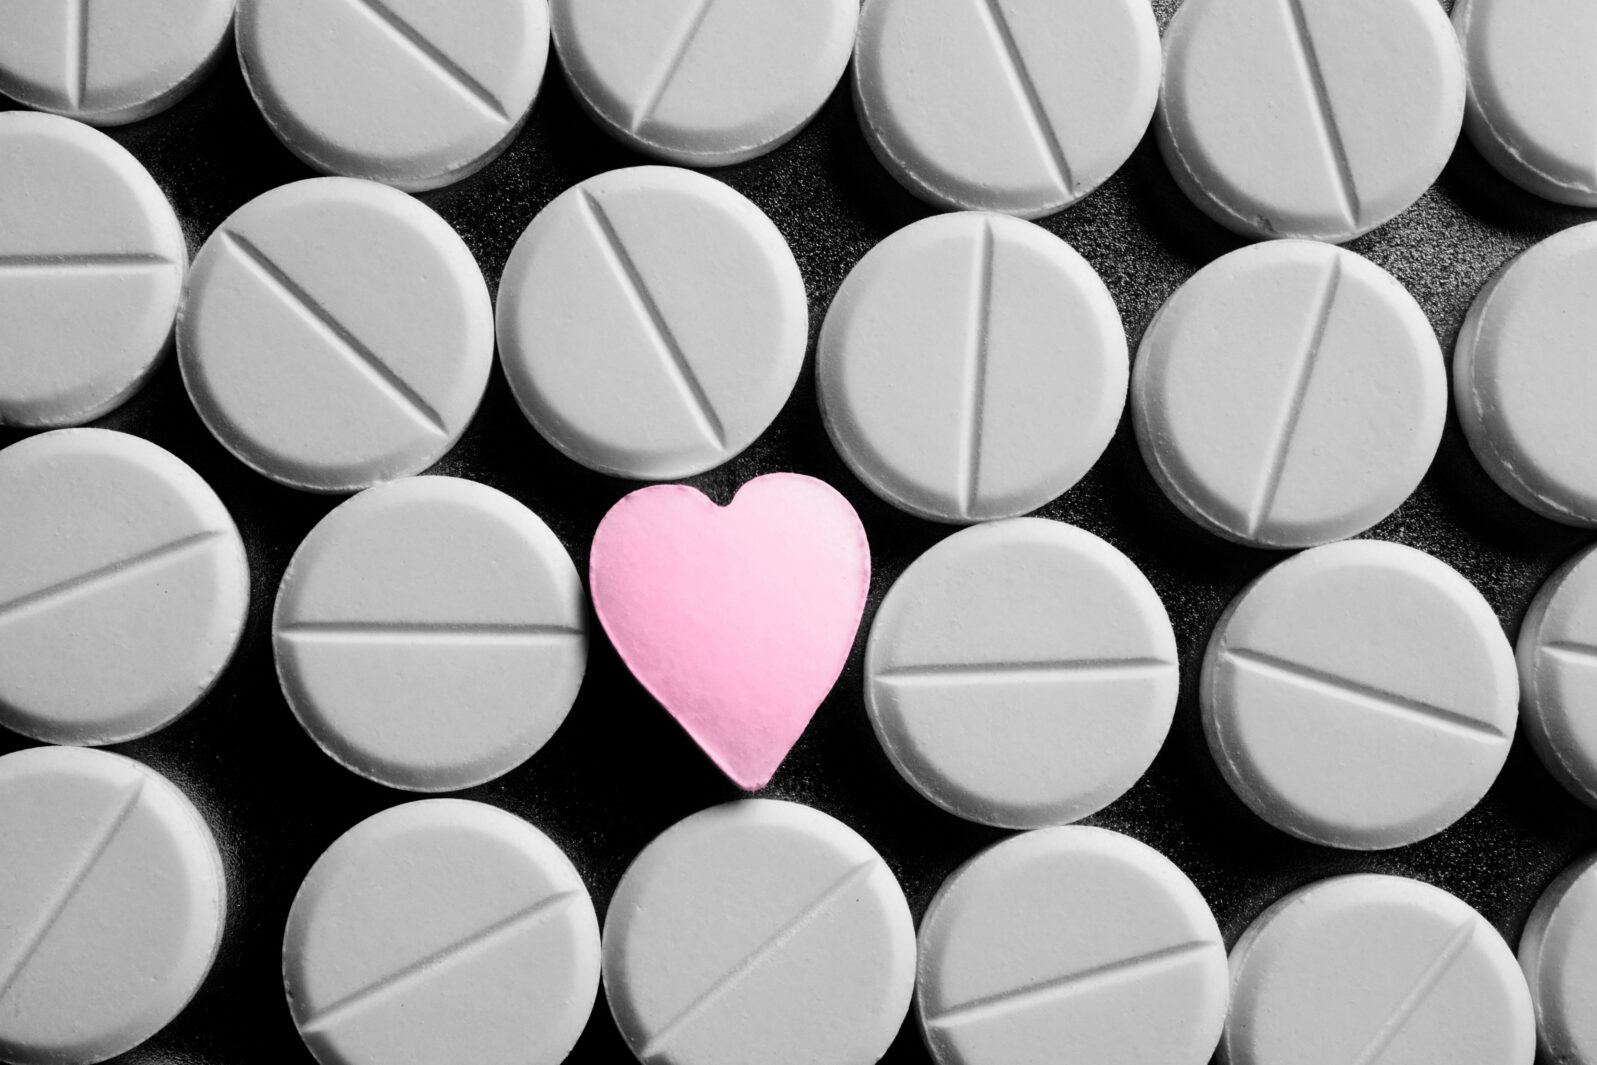 Heart shaped pill between rows of standard pills